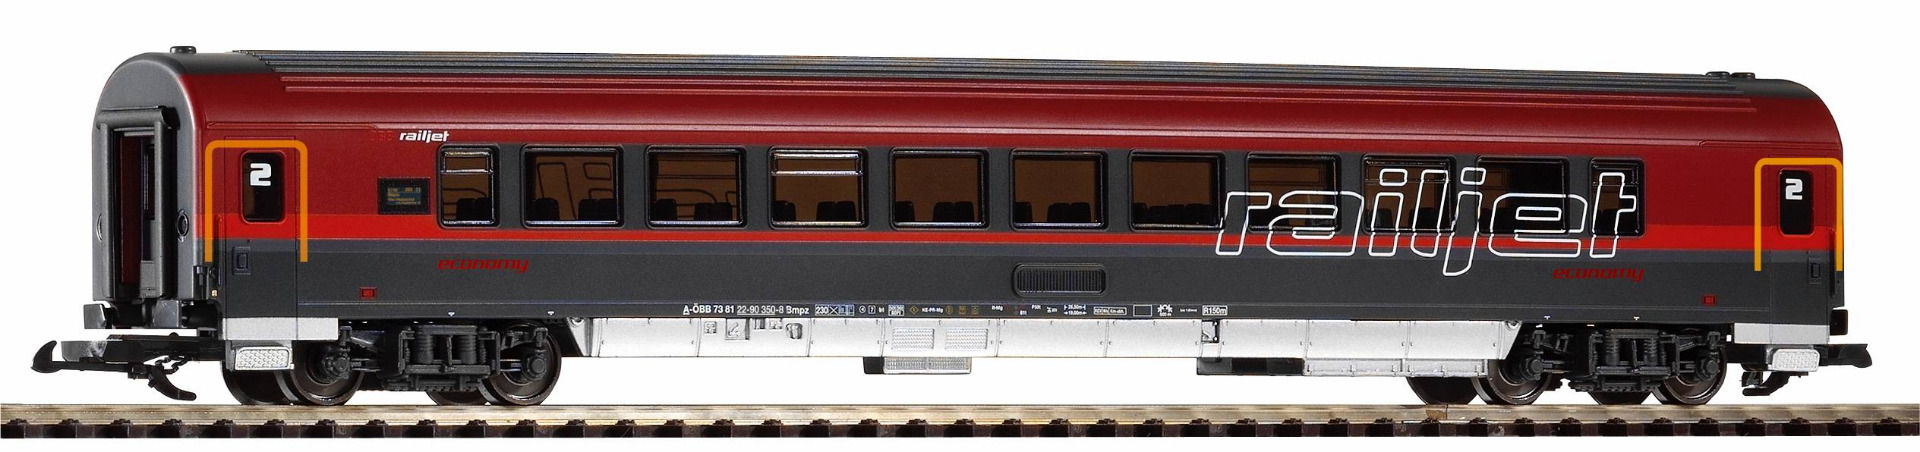 Piko 37665 G ÖBB RailJet-rijtuig 2e klas